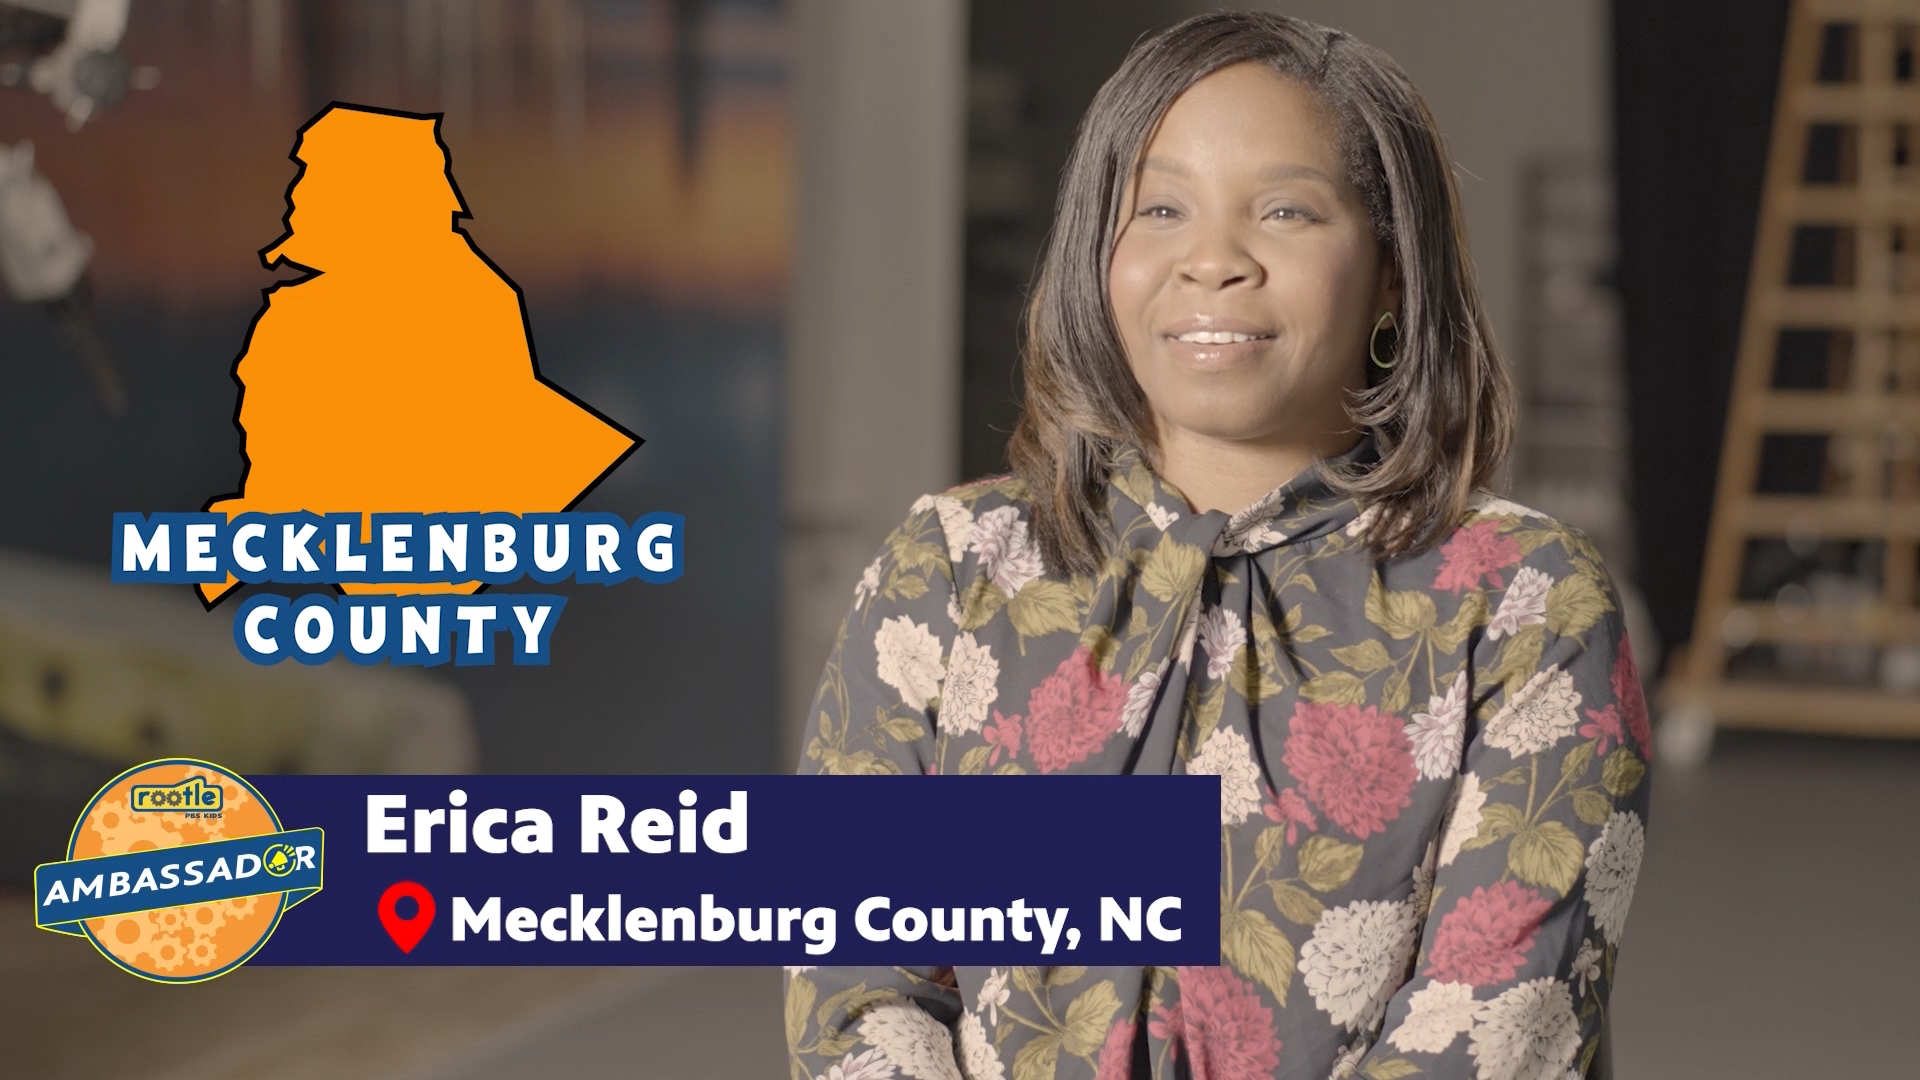 Meet Erica Reid, Mecklenburg County Rootle Ambassador